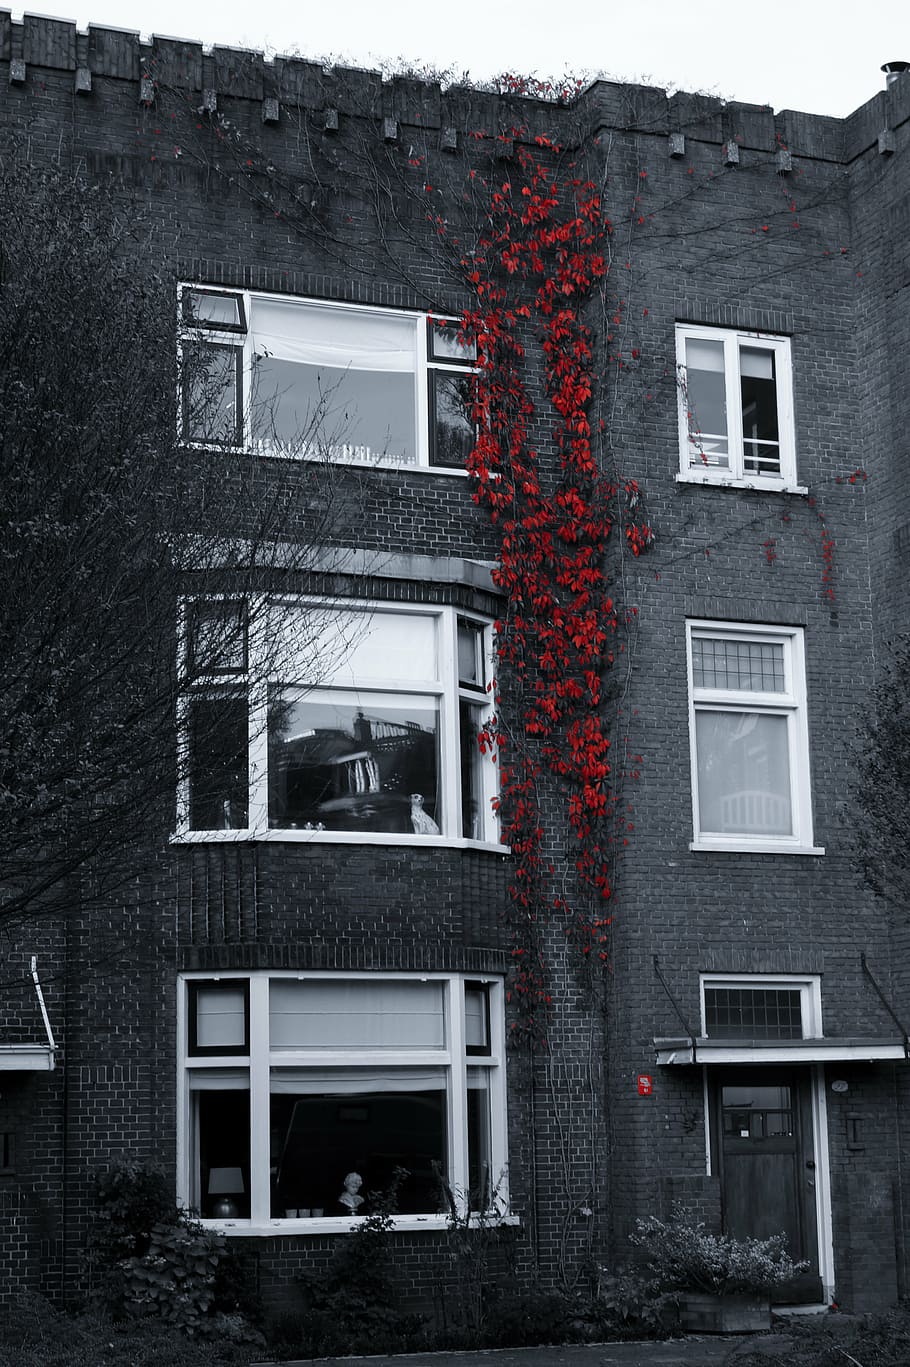 selectivo, fotografía en color, rojo, flores, concreto, edificio, gris, blanco, casa, enredaderas